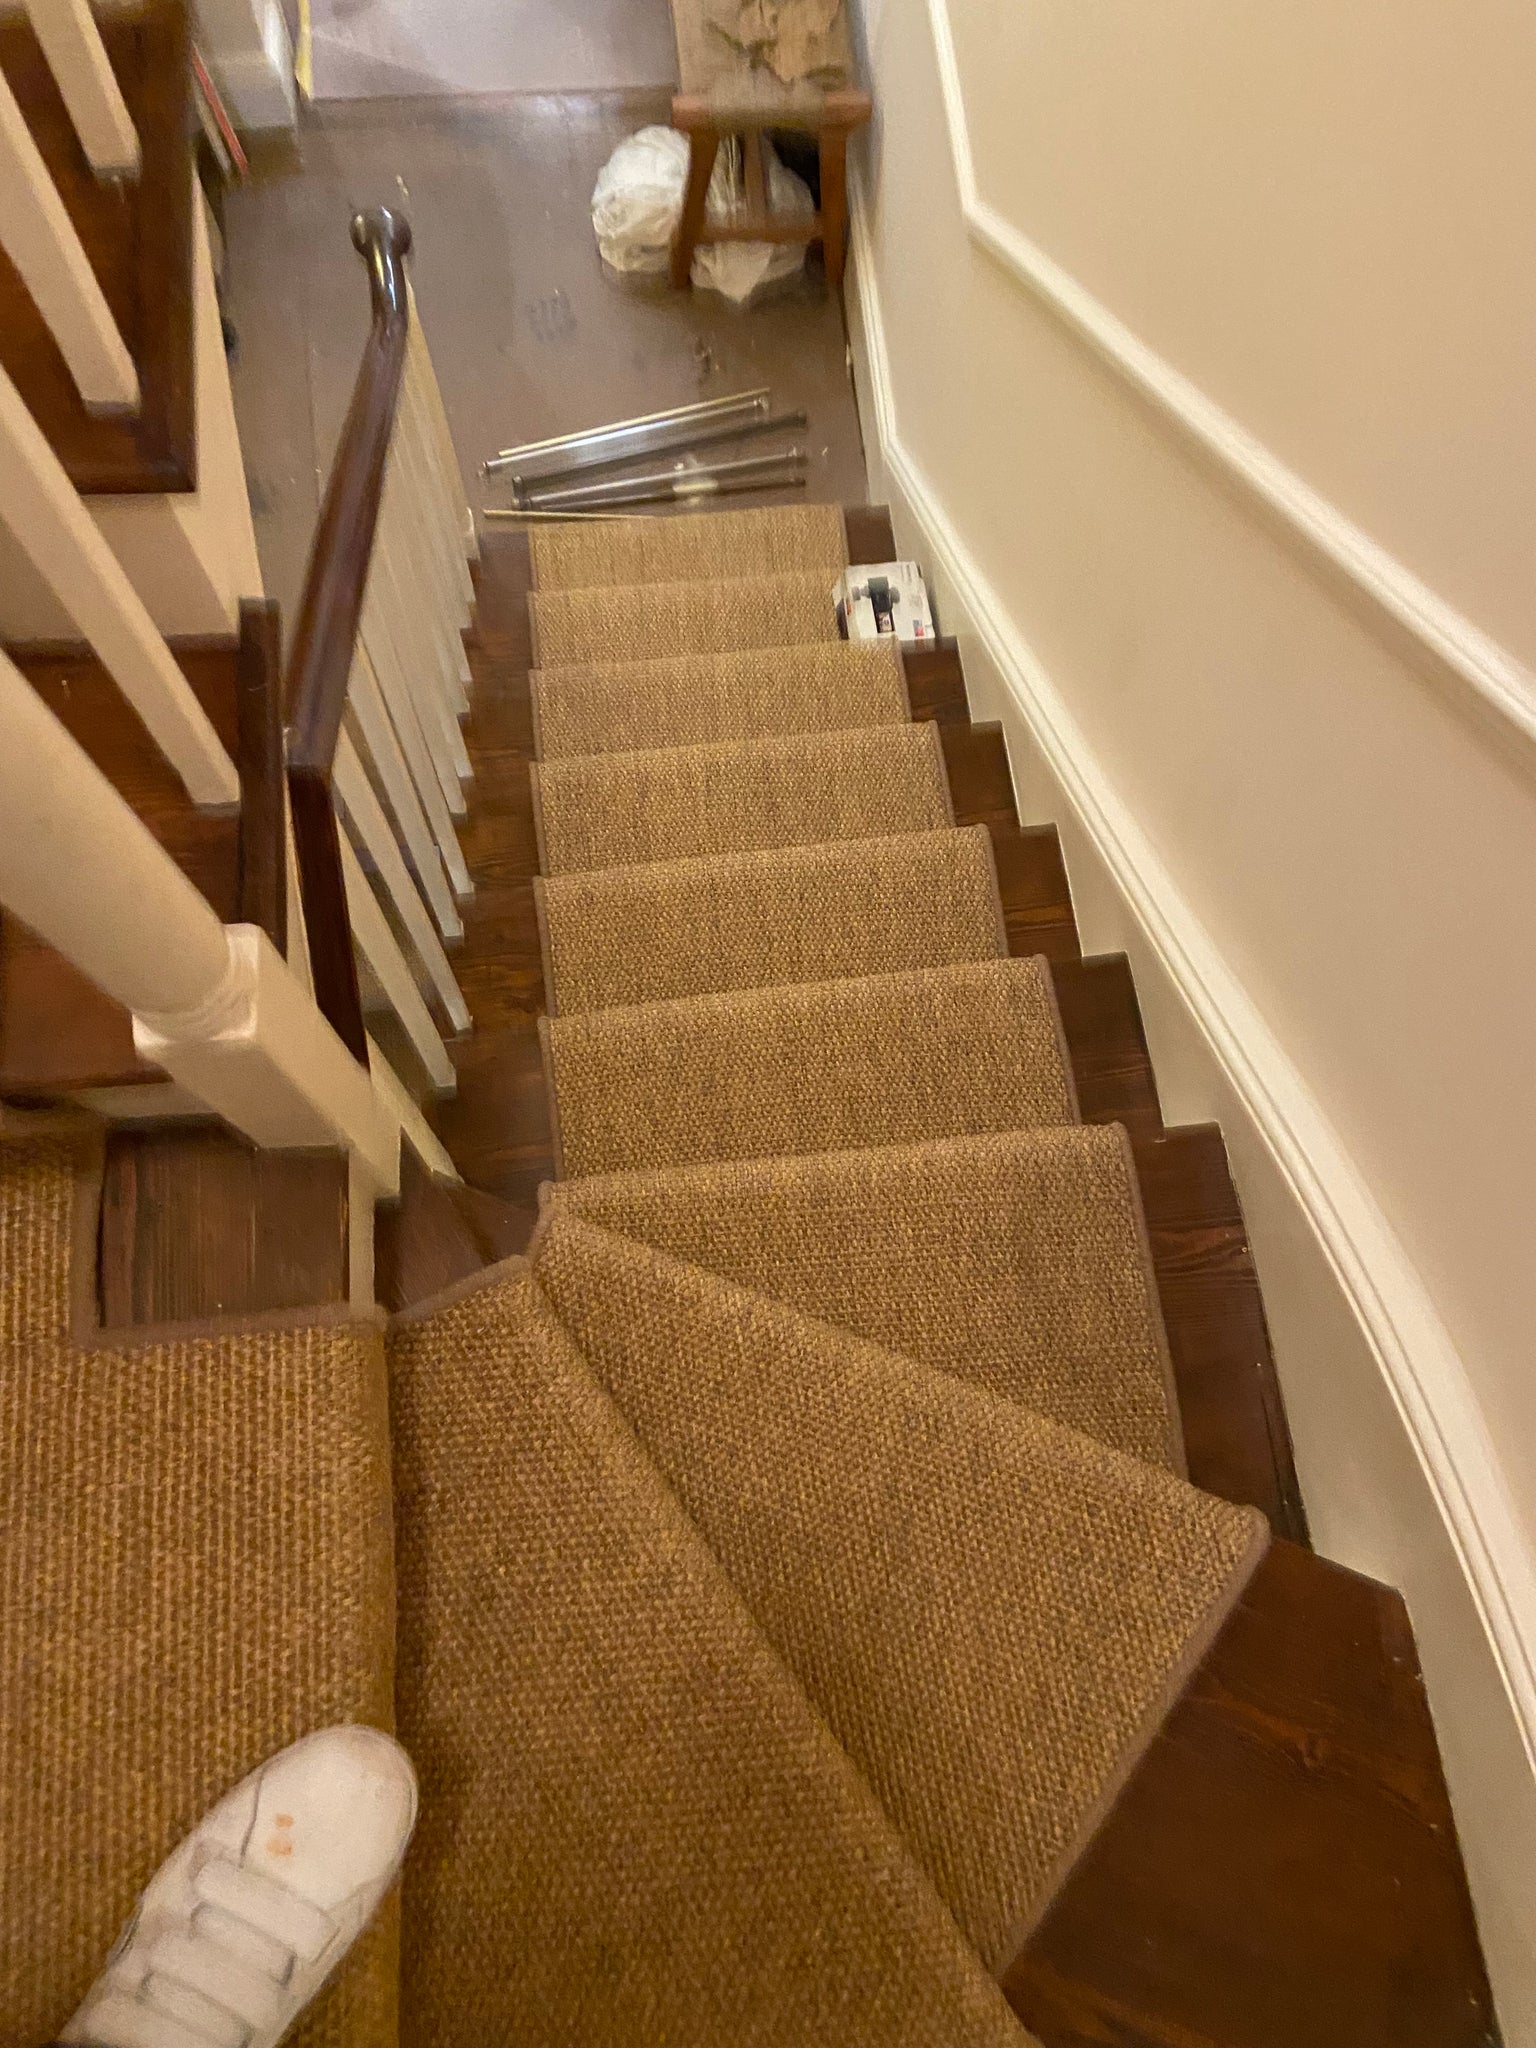 Alternative flooring sisal panama pilsbury stair runner with whipped edge